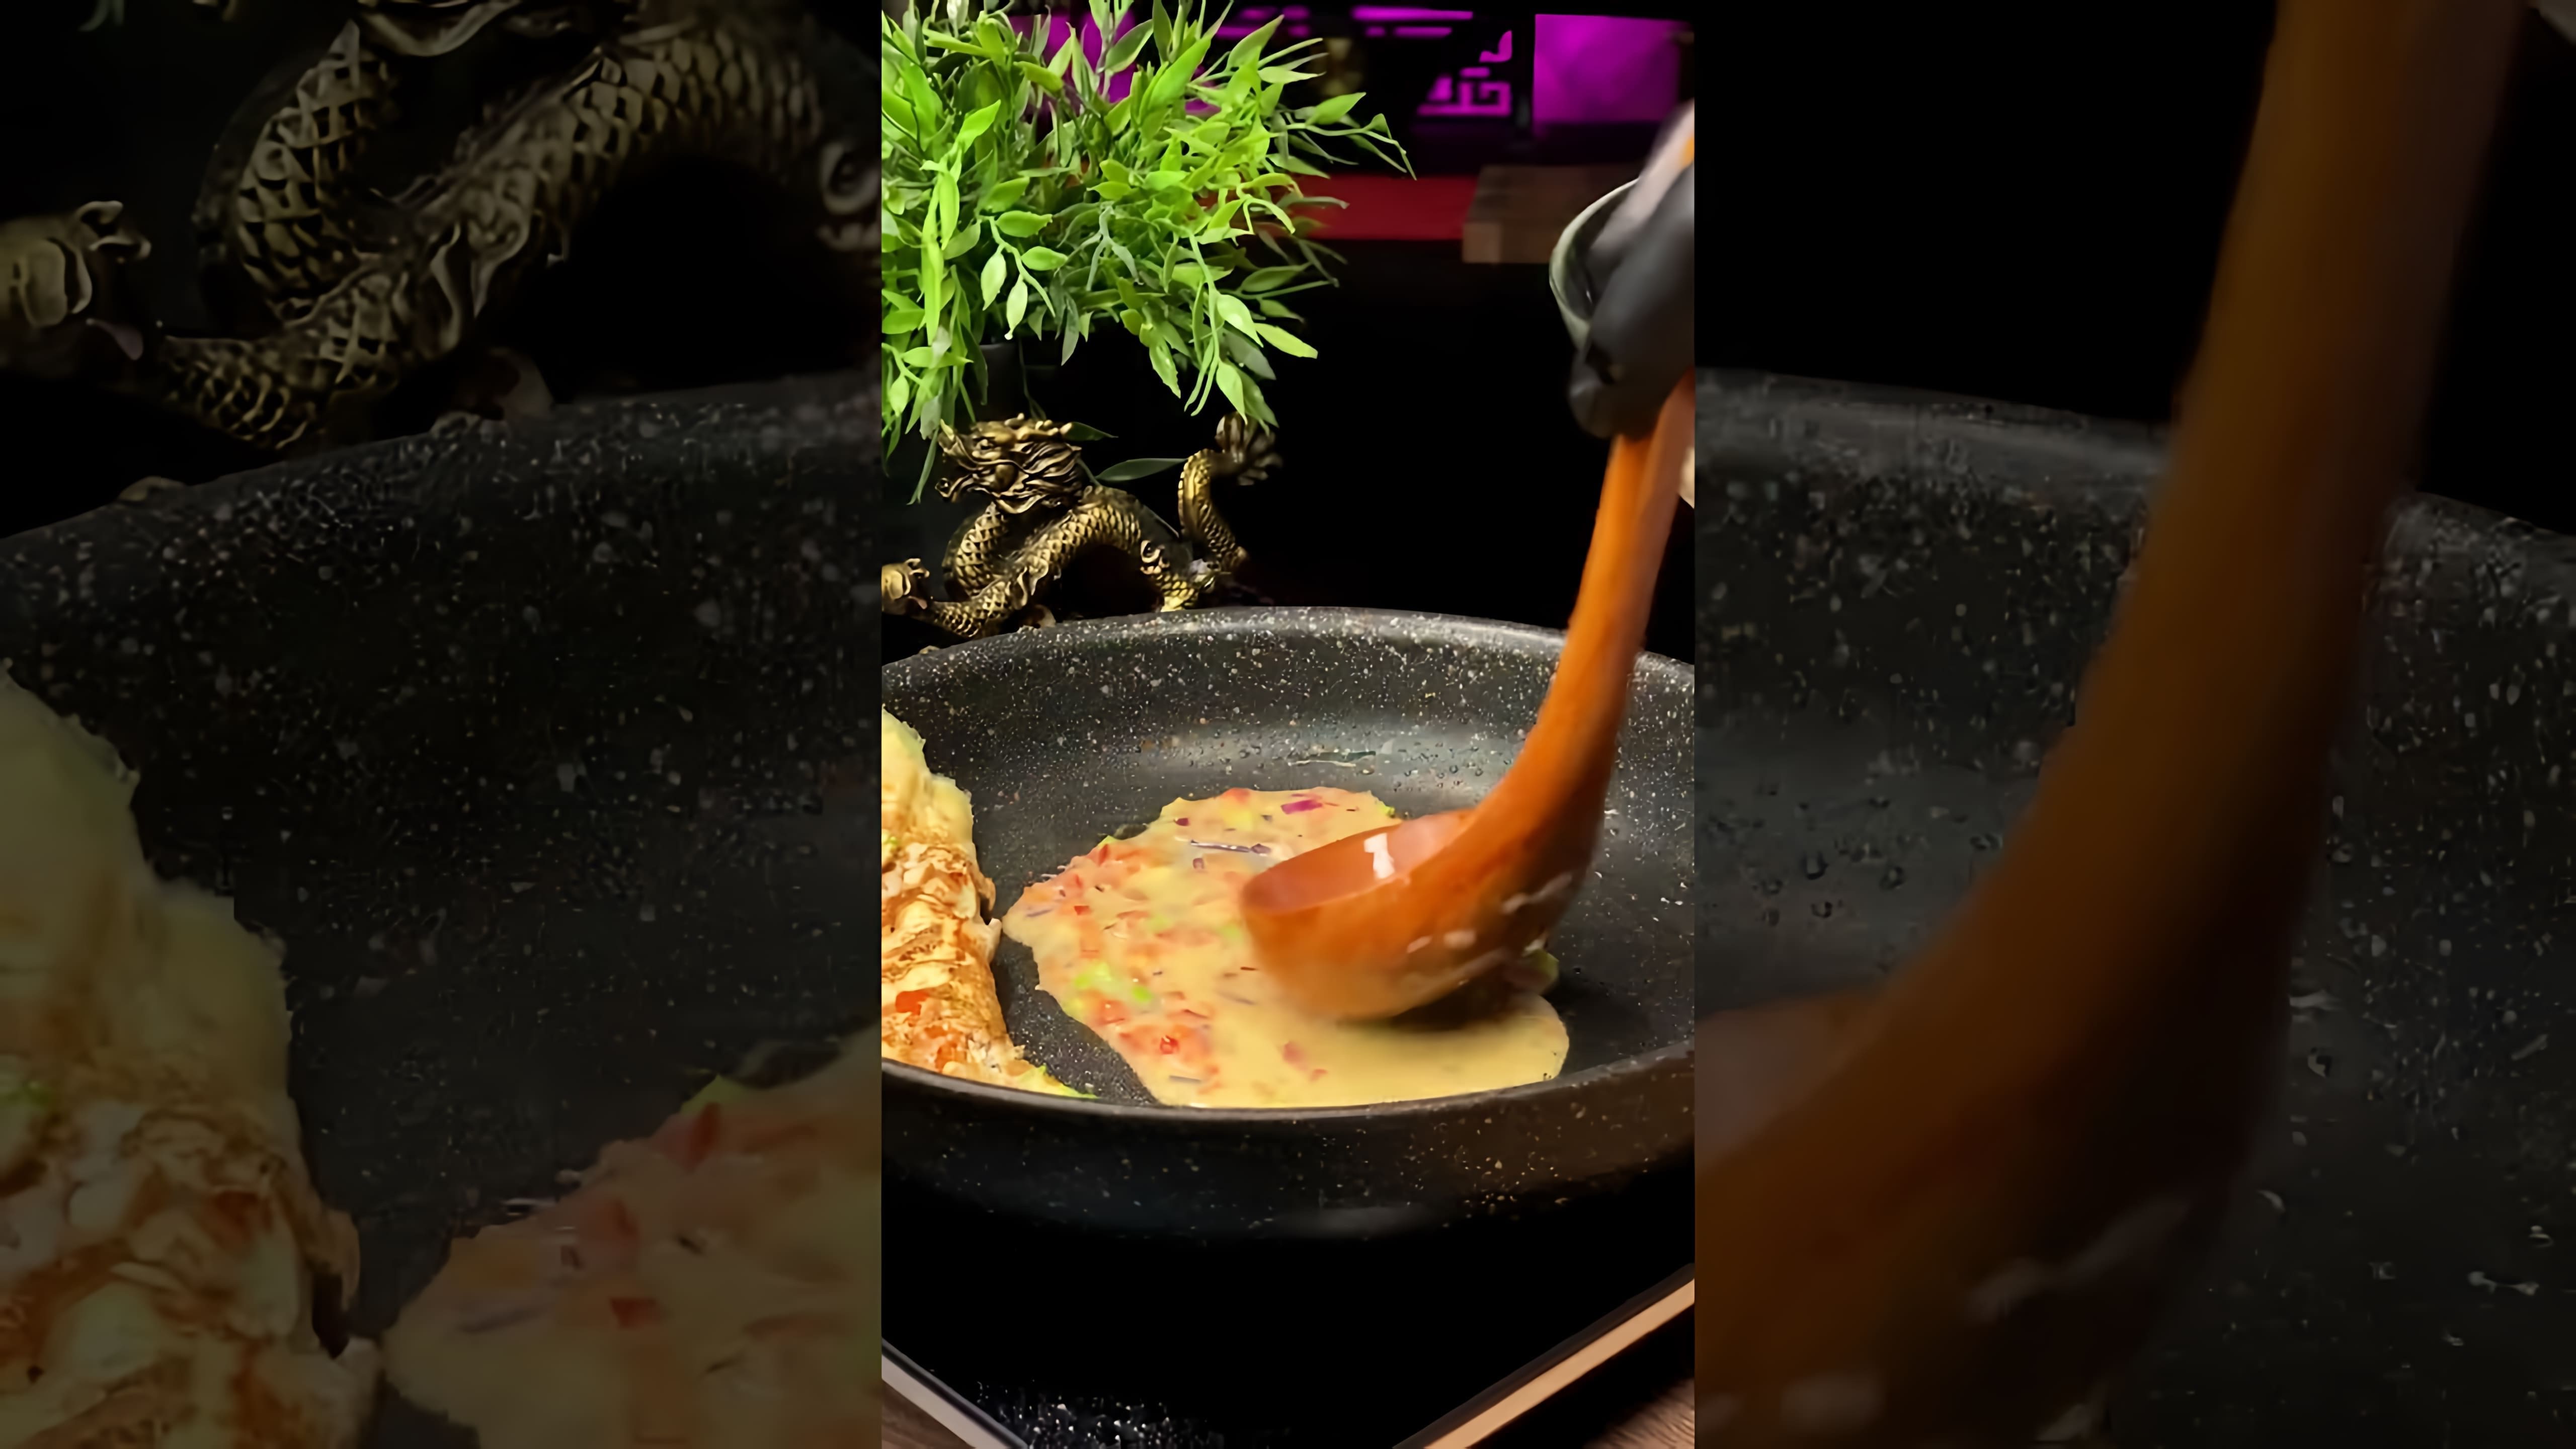 В этом видео демонстрируется процесс приготовления омлета по корейскому рецепту